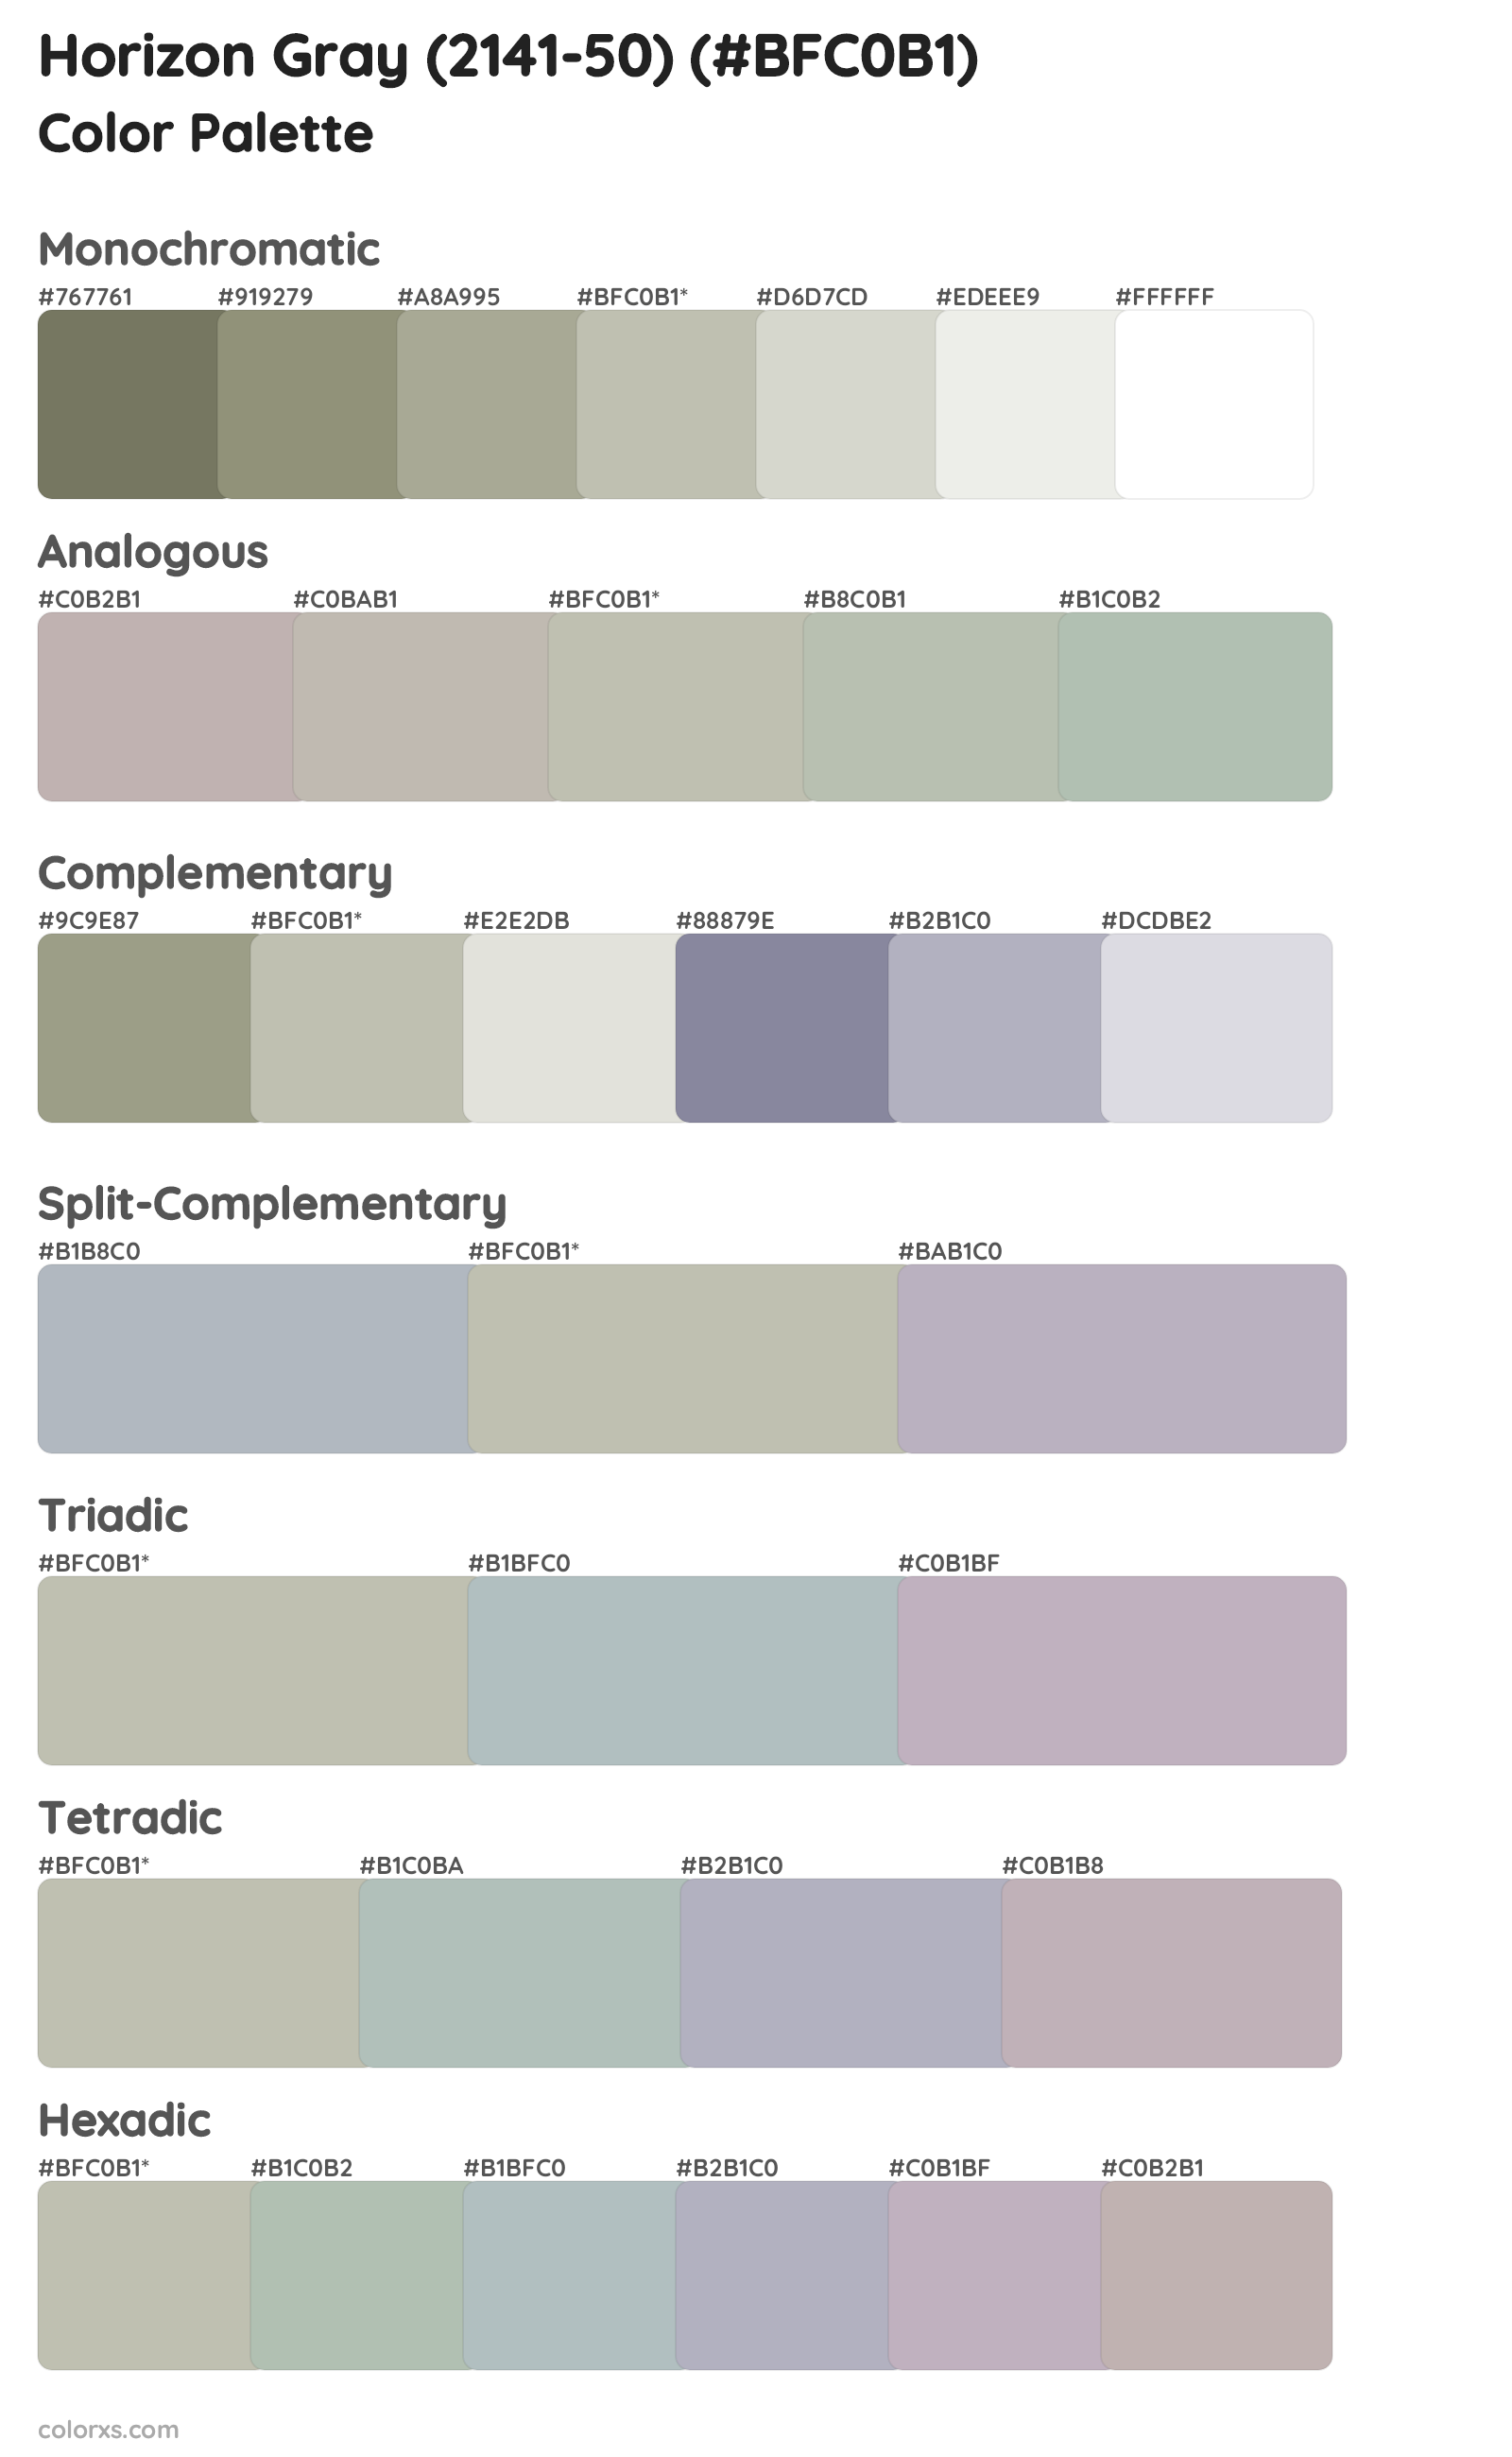 Horizon Gray (2141-50) Color Scheme Palettes